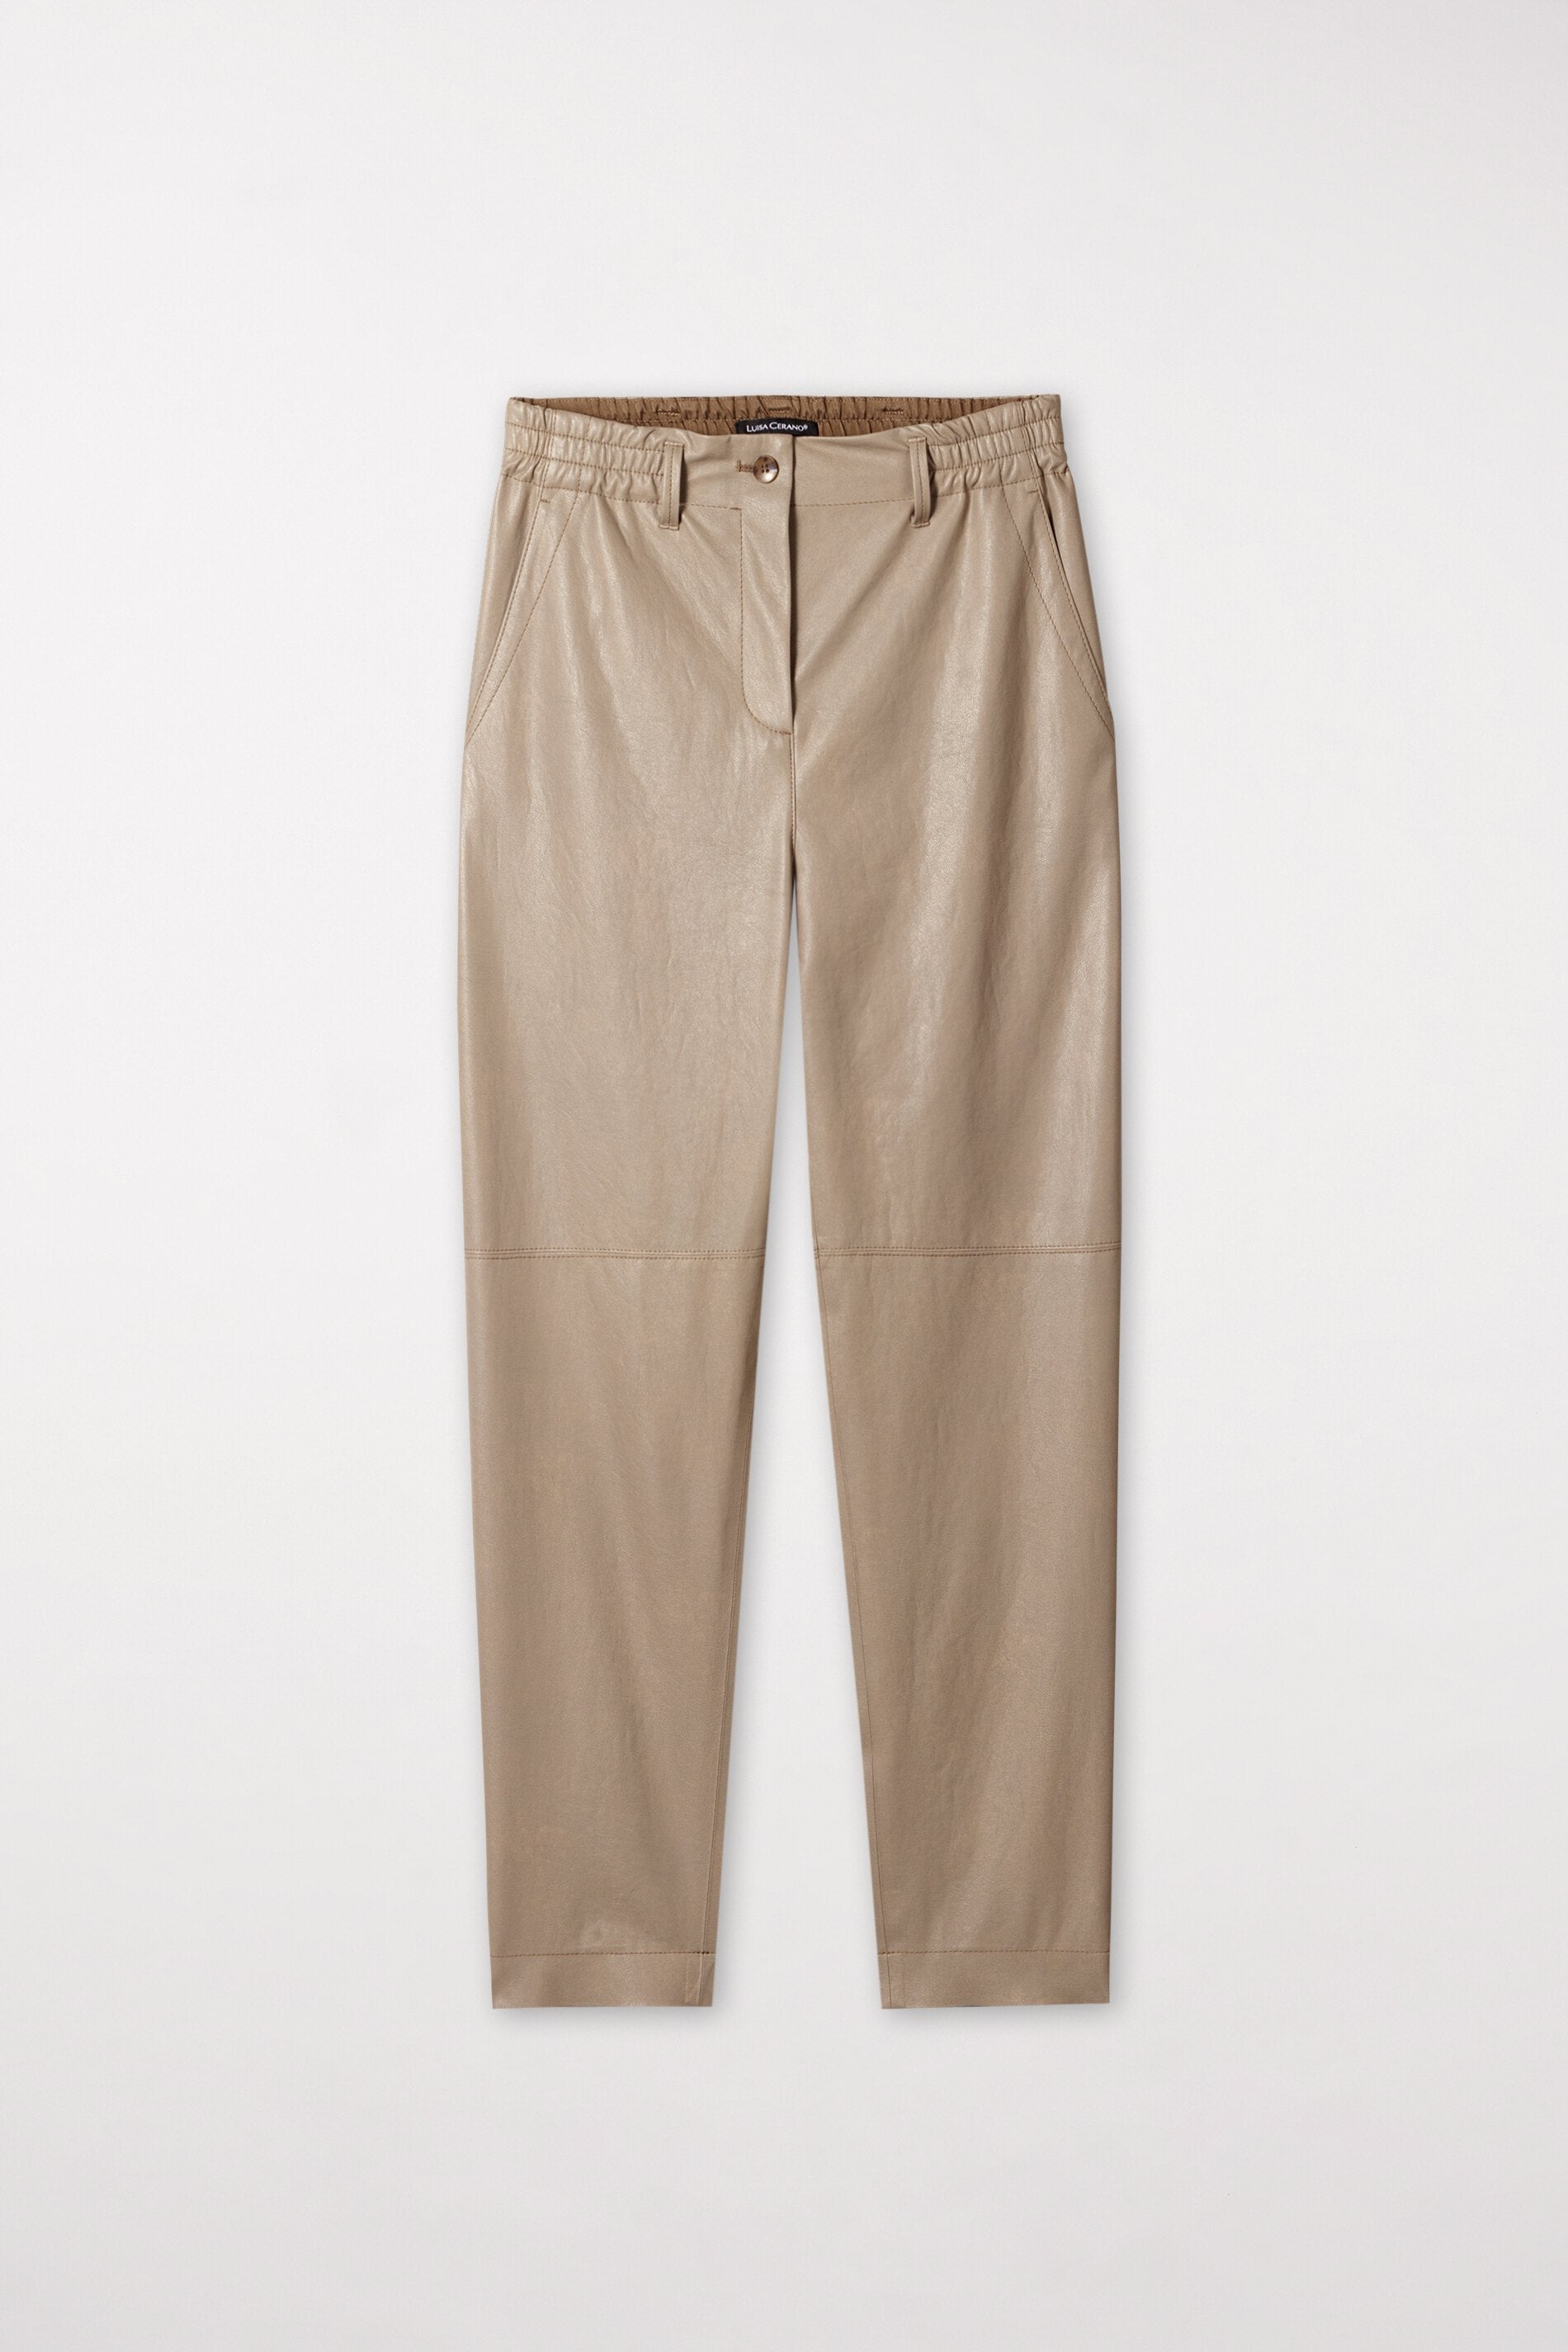 LUISA CERANO-OUTLET-SALE-Tapered-Pants in Leder-Optik-Hosen-by-ARCHIVIST